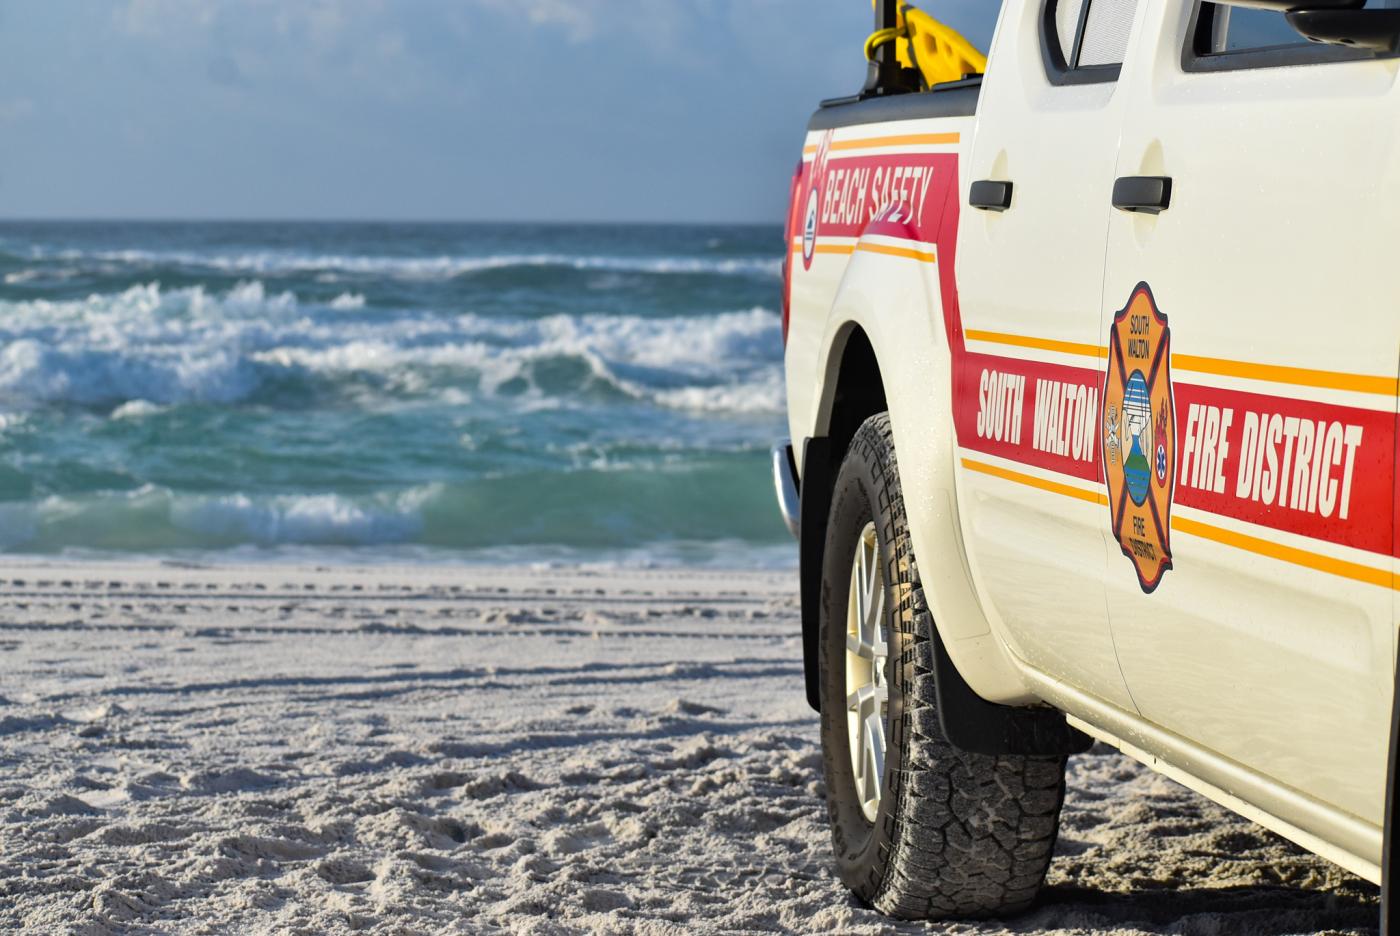 Fire department truck on beach